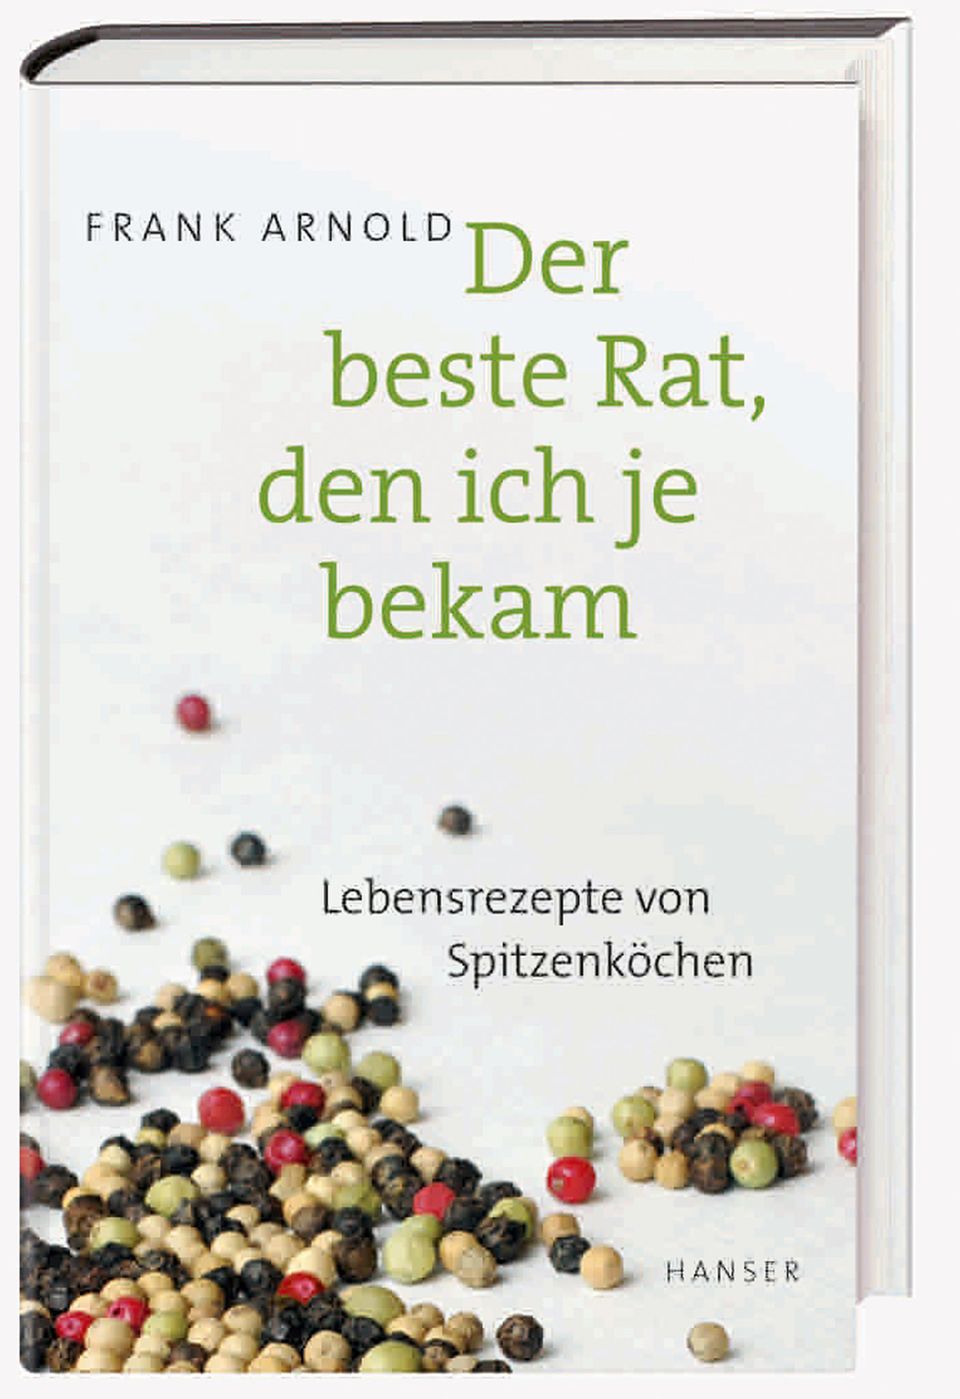 Mehr Lebensrezepte von Spitzenköchen finden Sie hier: Der beste Rat, den ich je bekam. Von Frank Arnold. Hanser Verlag. 288 Seiten. 16 Euro.